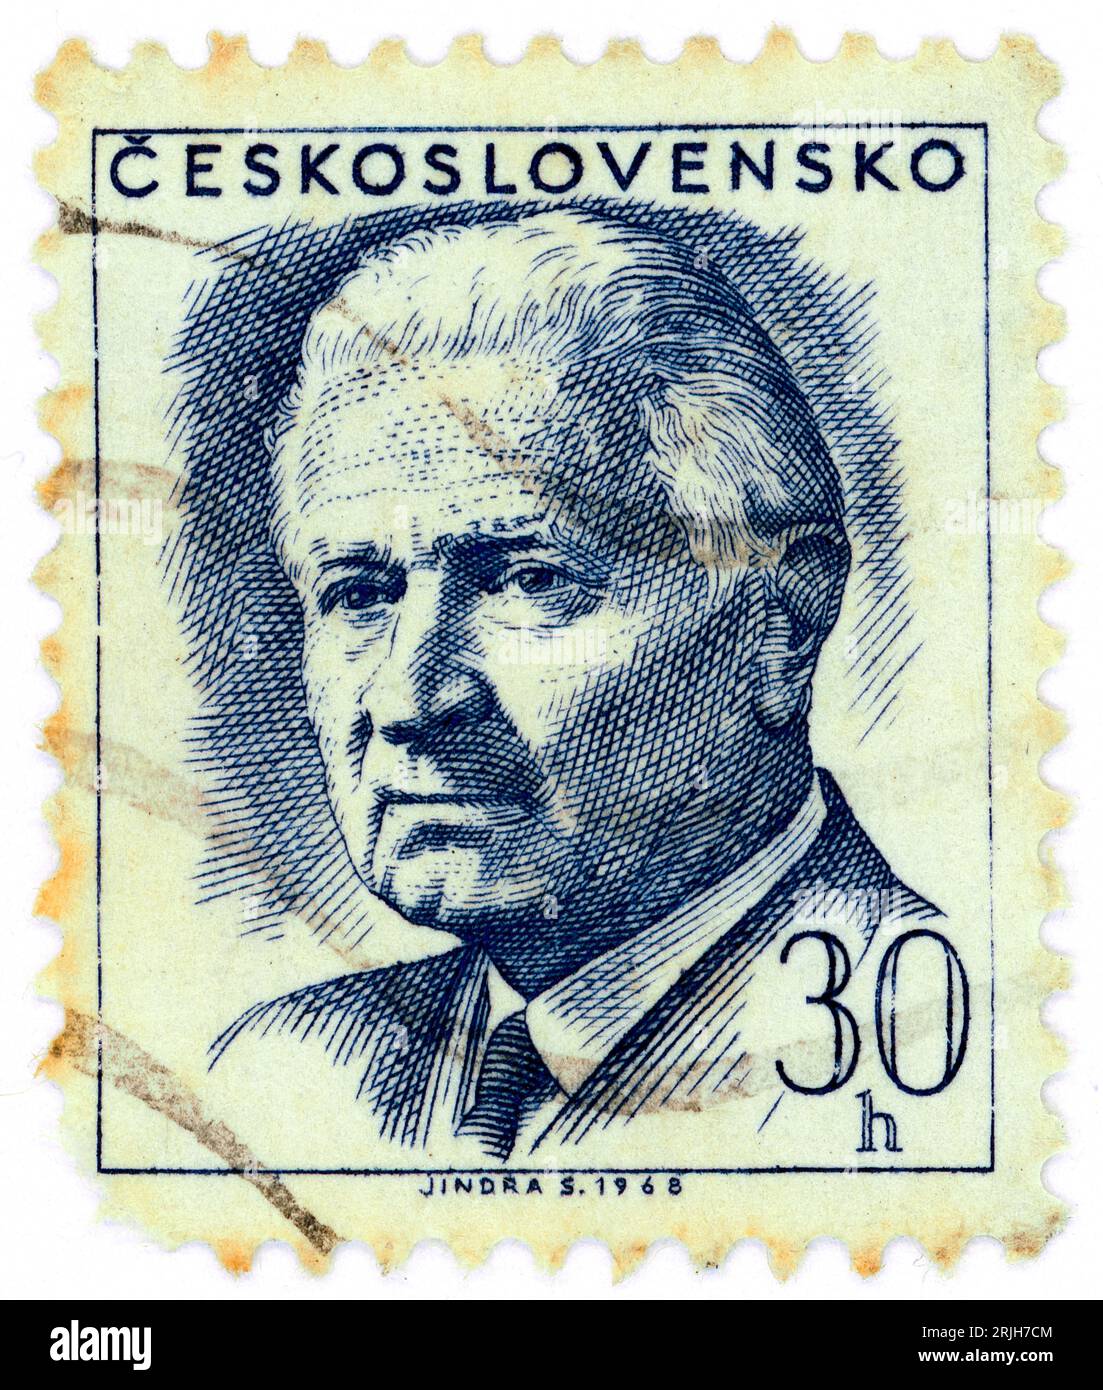 Ludvík Svoboda (1895 – 1979). Timbre-poste émis en Tchécoslovaquie en 1968. Ludvík Svoboda était un général et homme politique tchèque. Il a combattu dans les deux guerres mondiales, pour lesquelles il a été considéré comme un héros national, et il a plus tard servi comme président de la Tchécoslovaquie de 1968 à 1975. Banque D'Images